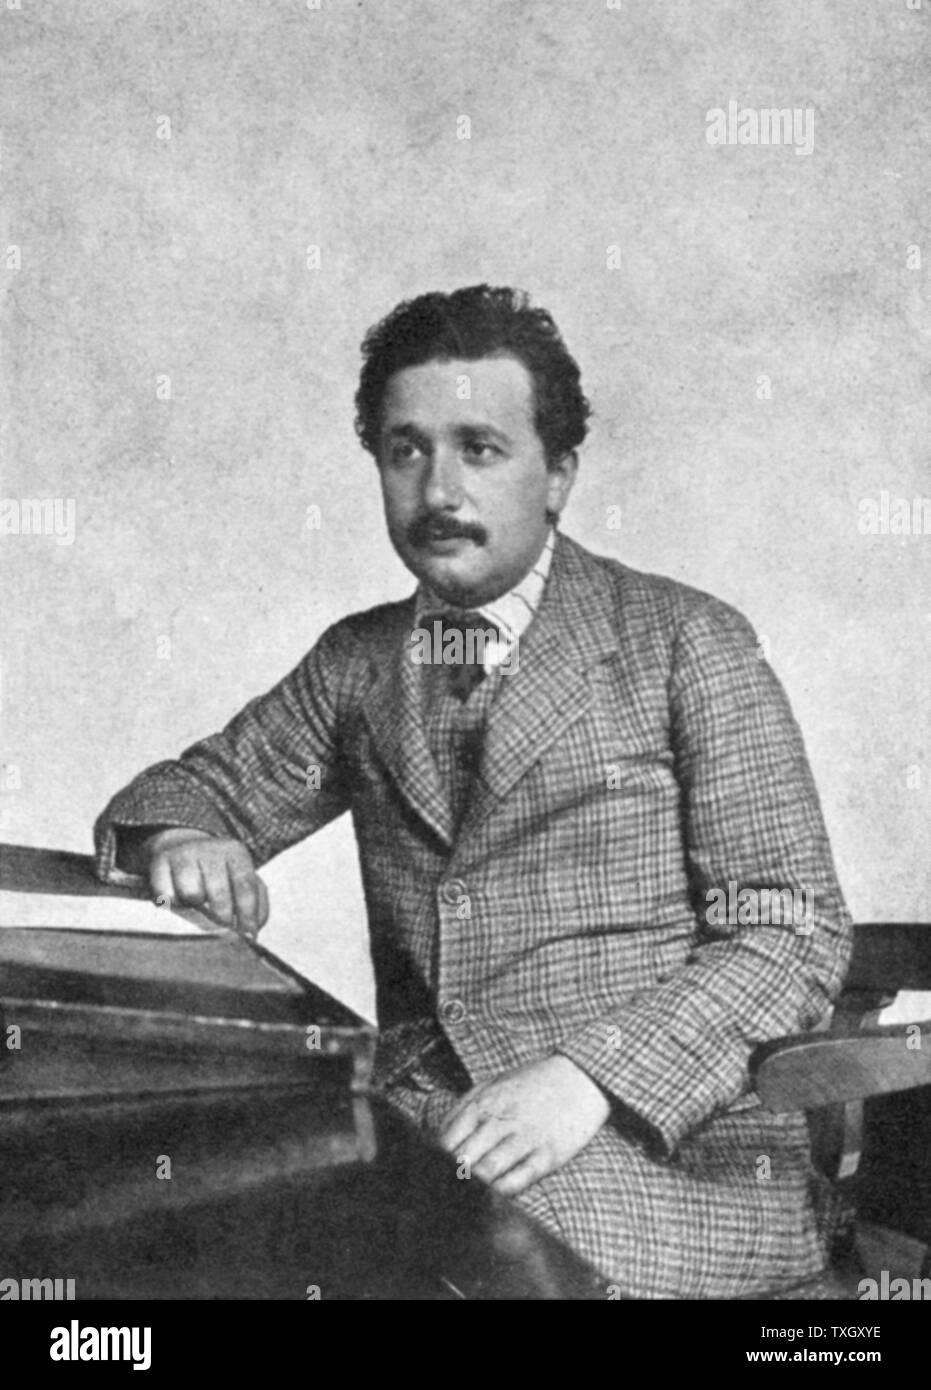 Albert Einstein (1879-1955) deutsch-schweizerische Mathematiker, Relativitätstheorie Einsteins im Jahr 1905 Stockfoto